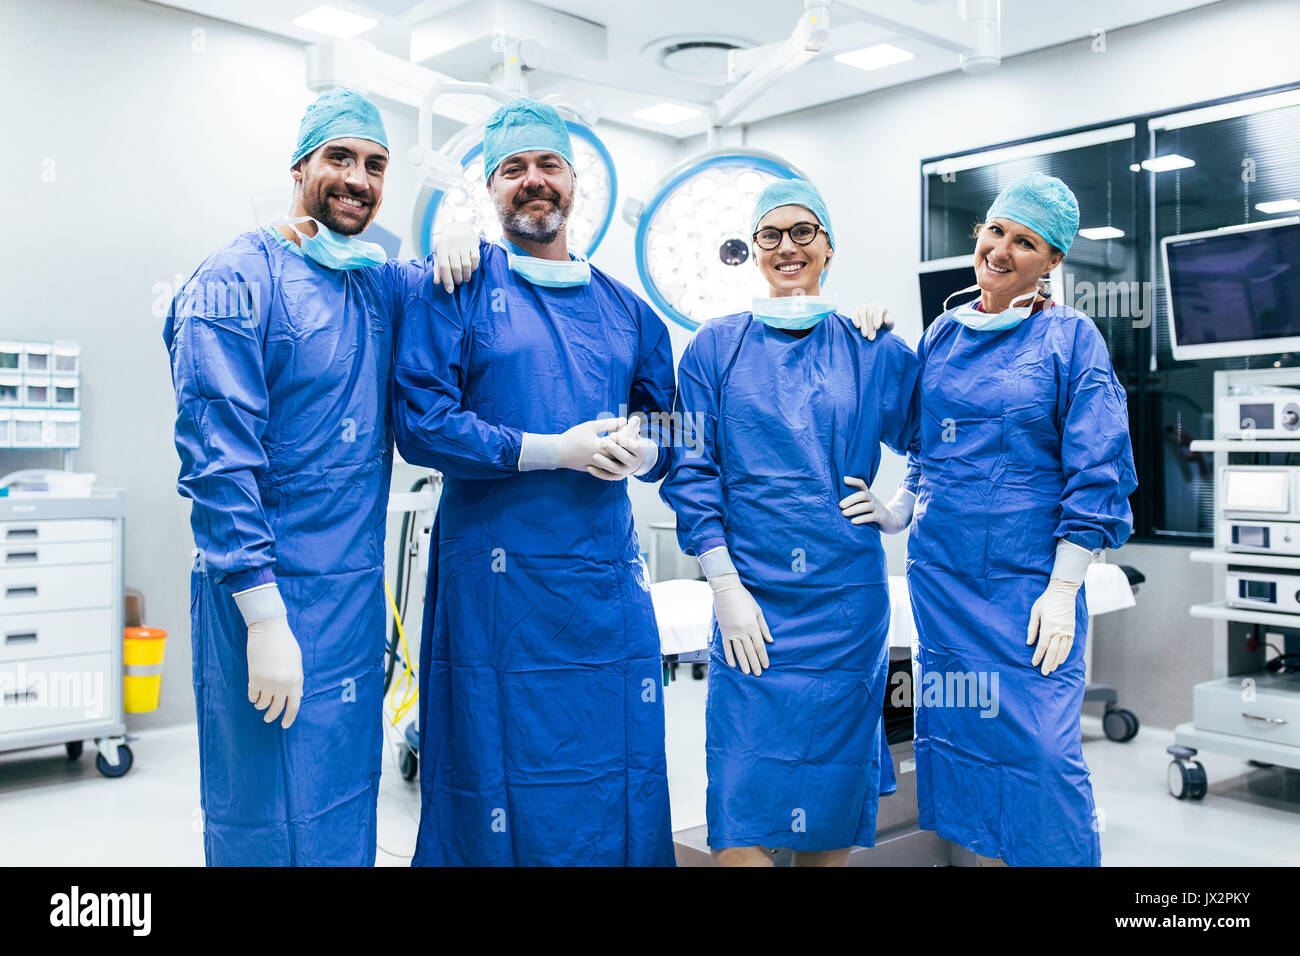 Portrait von erfolgreichen medizinischen Arbeiter in chirurgischen Uniform im Operationssaal. Team von Chirurgen im Operationssaal, bereit für die nächste Operation. Stockfoto